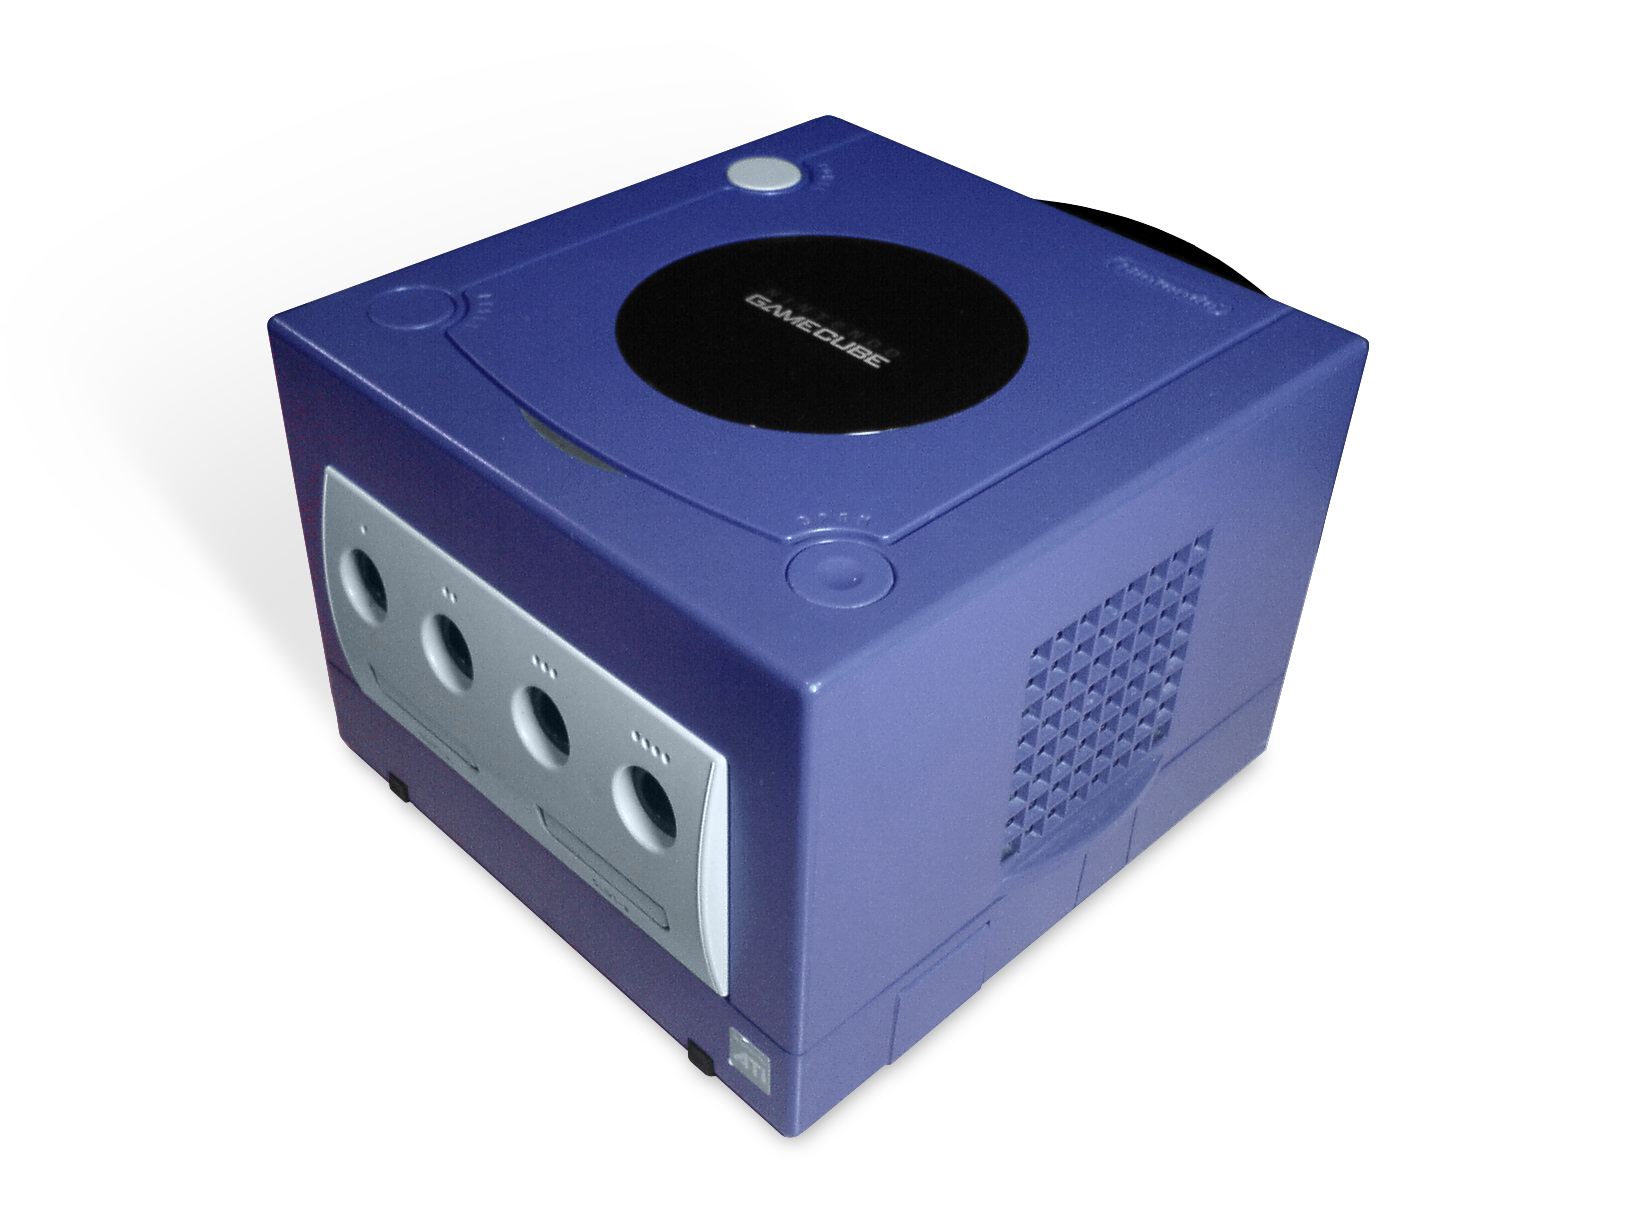 GameCube #17